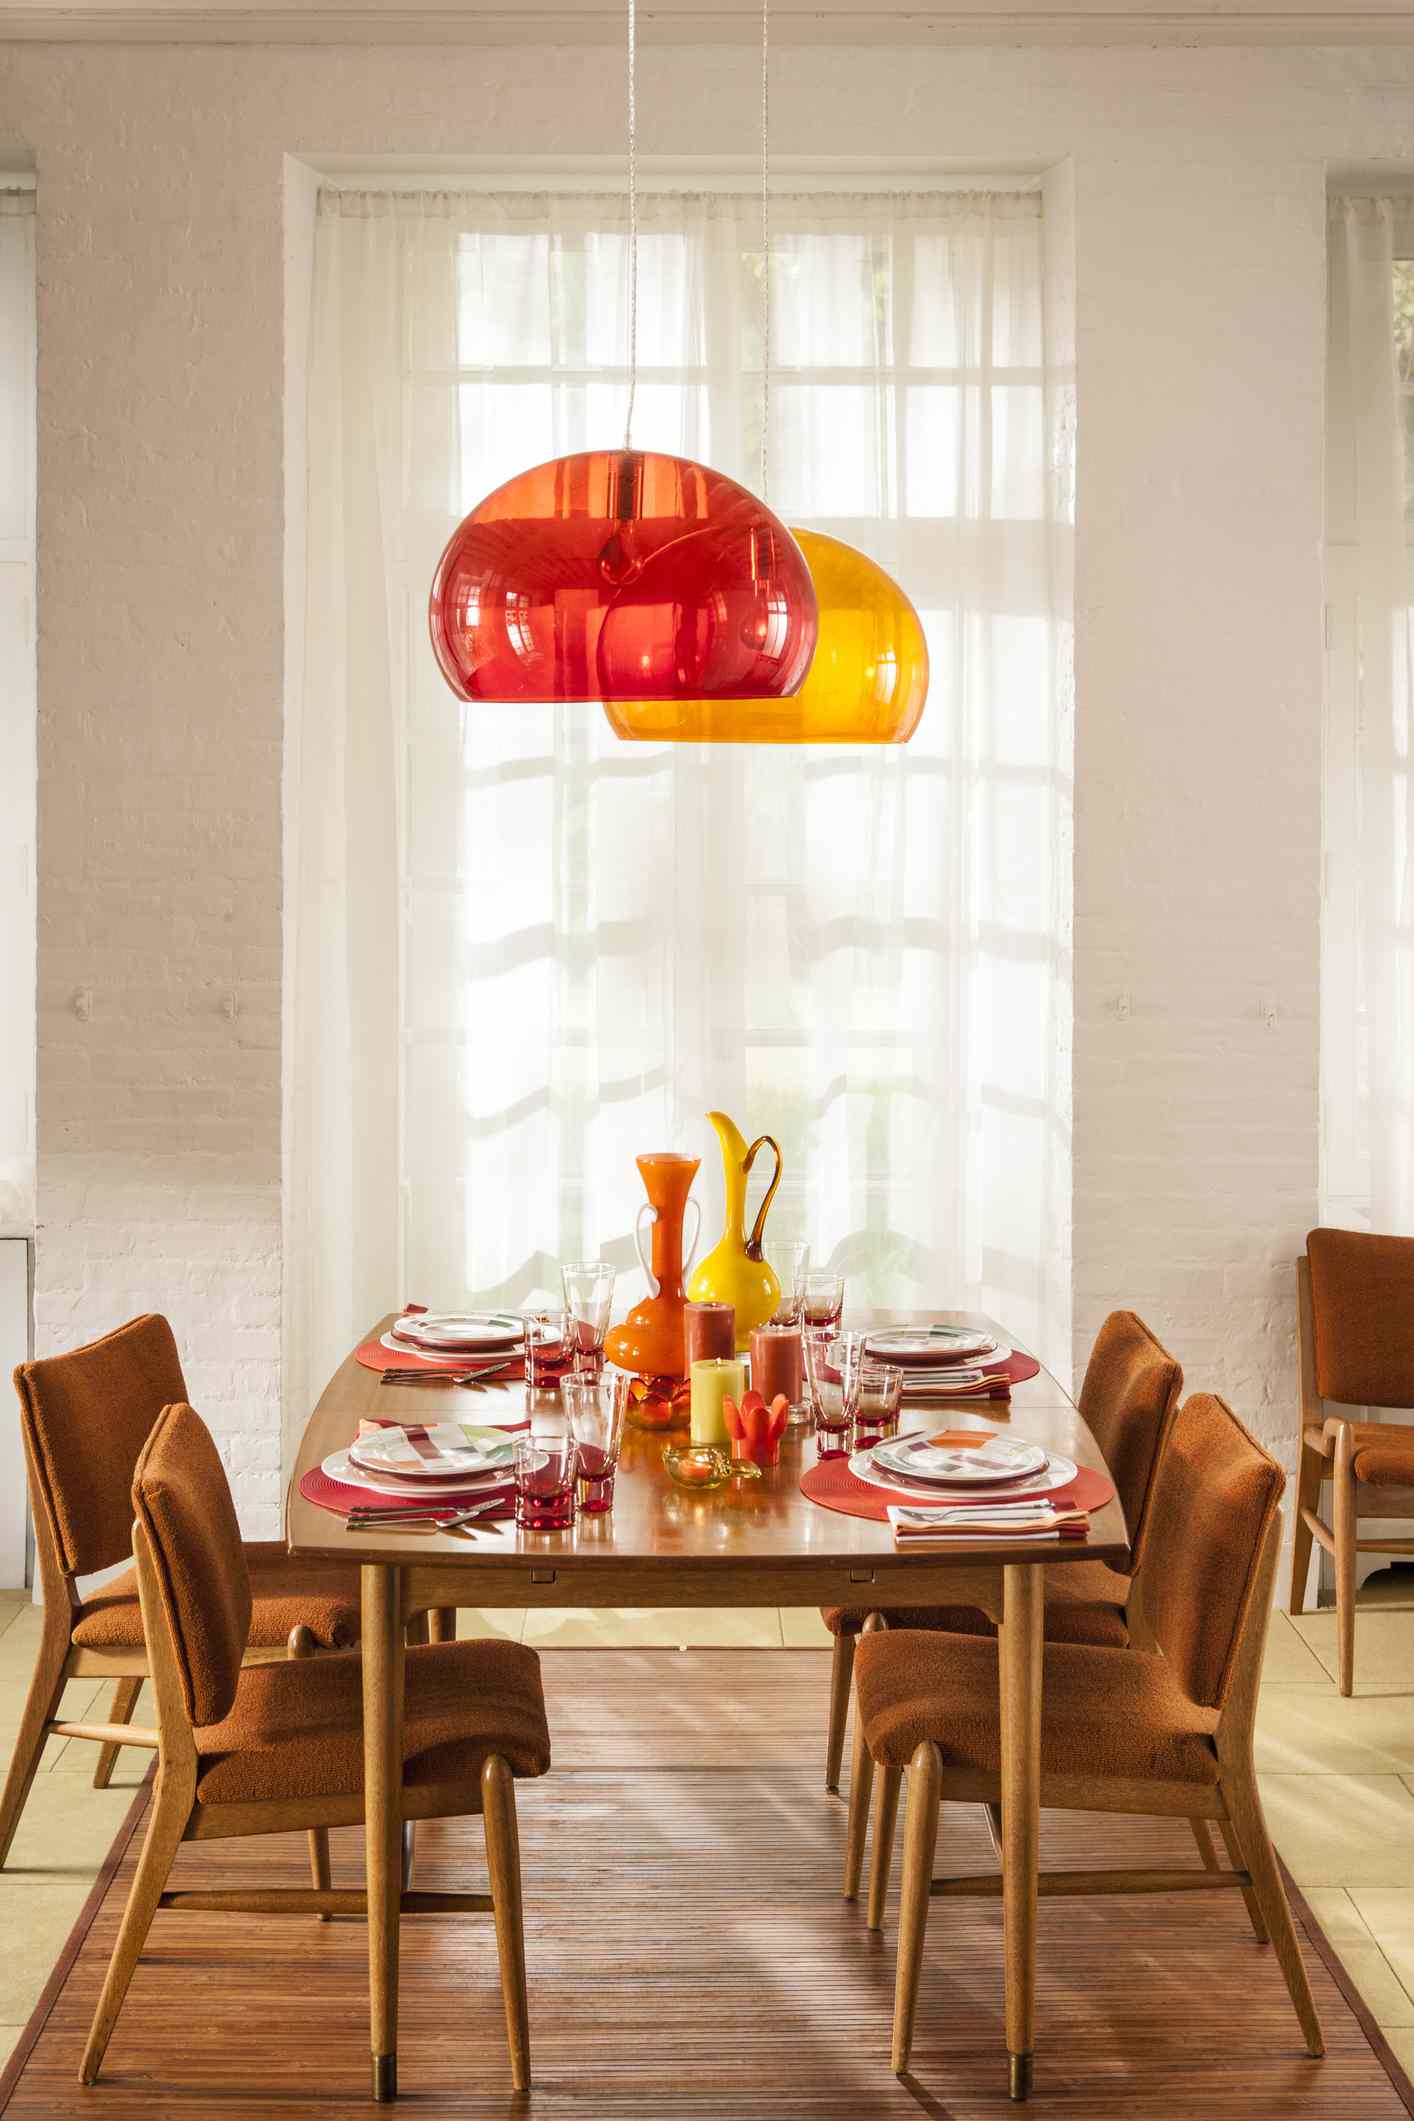 Table à manger et chaises avec suspensions rouges et jaunes au-dessus